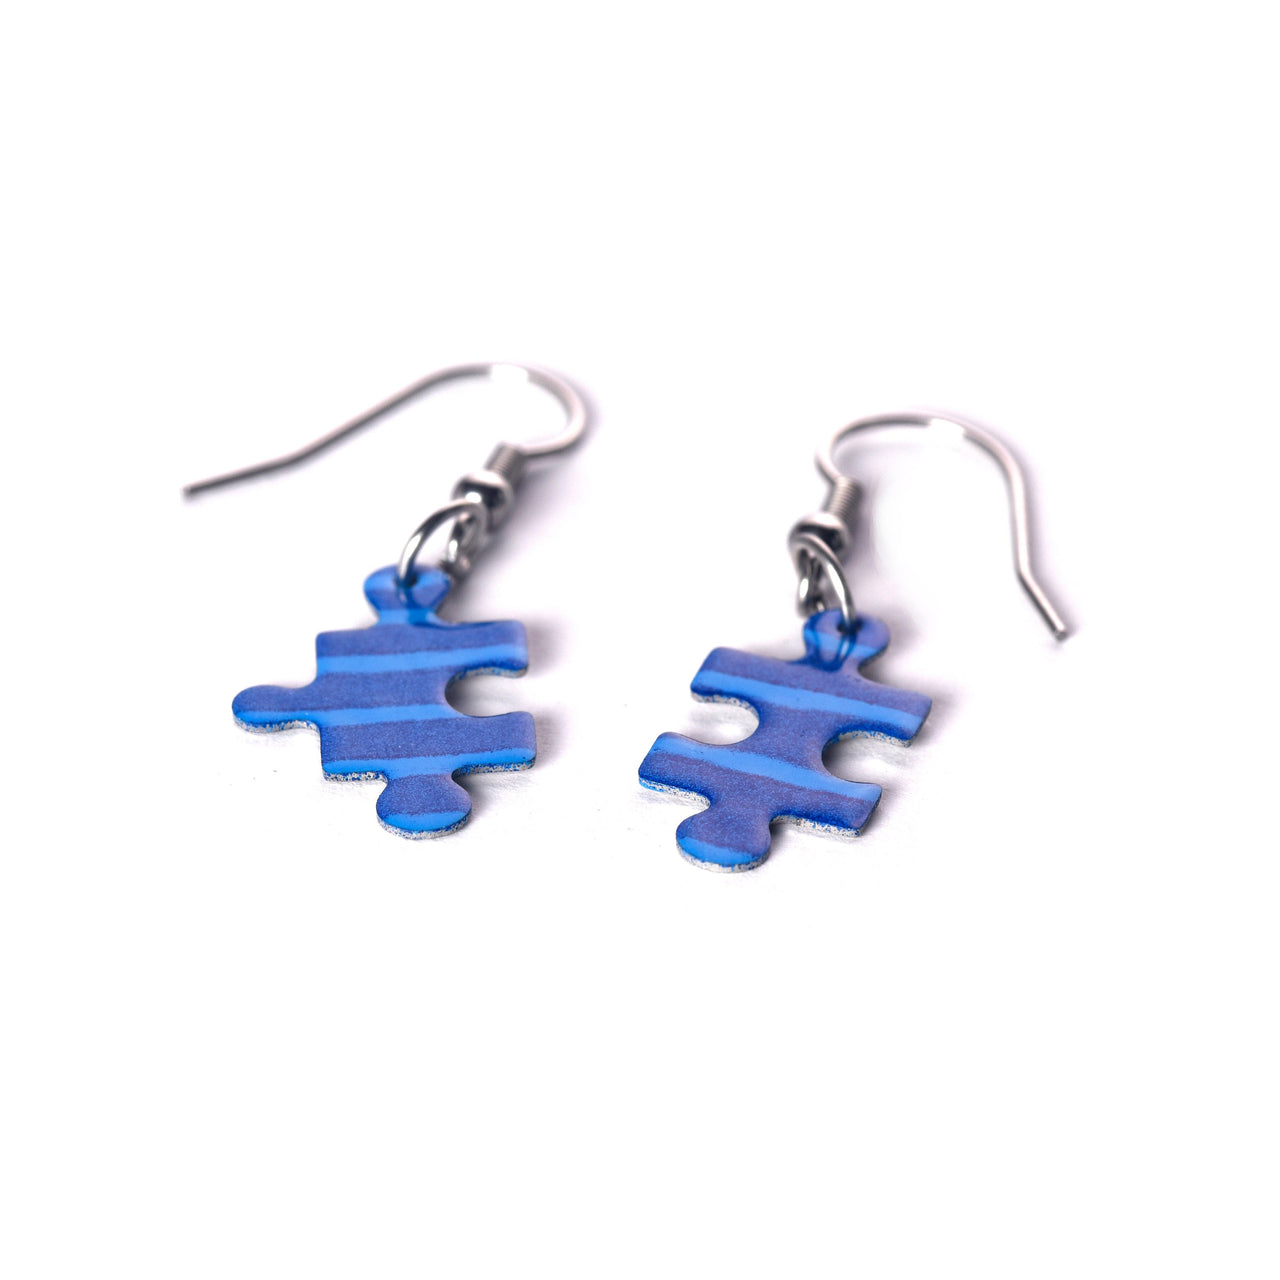 Blue Jigsaw Puzzle Earrings